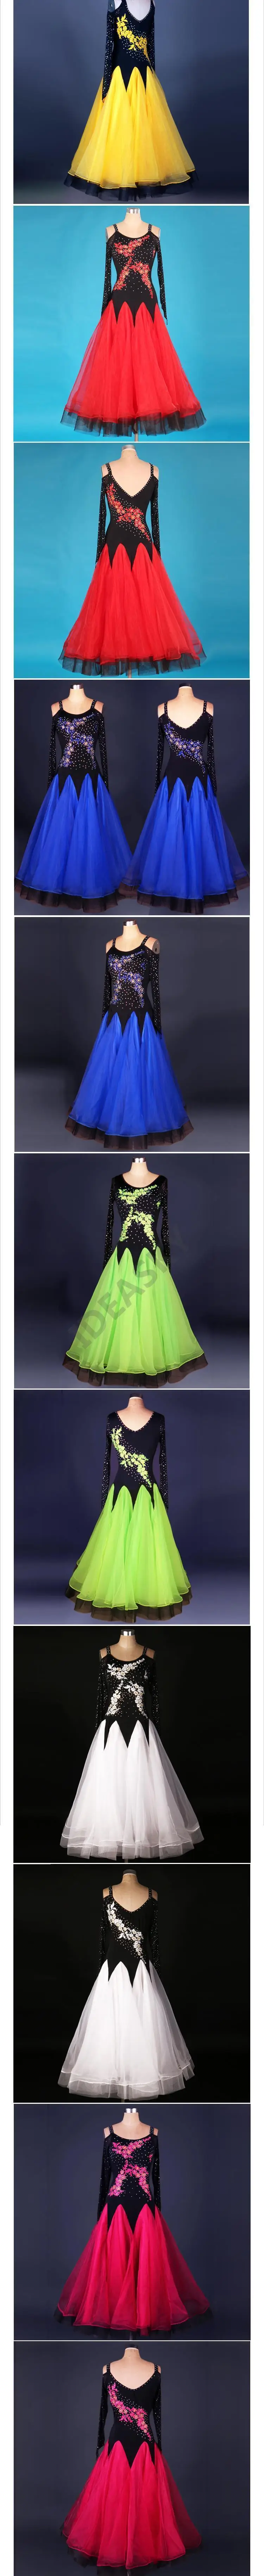 Бального танца платье зеленого цвета, платья для участия в конкурсах бального танца Танго, латина танцевальный бахрома Стандартный танцевальный зал состязание